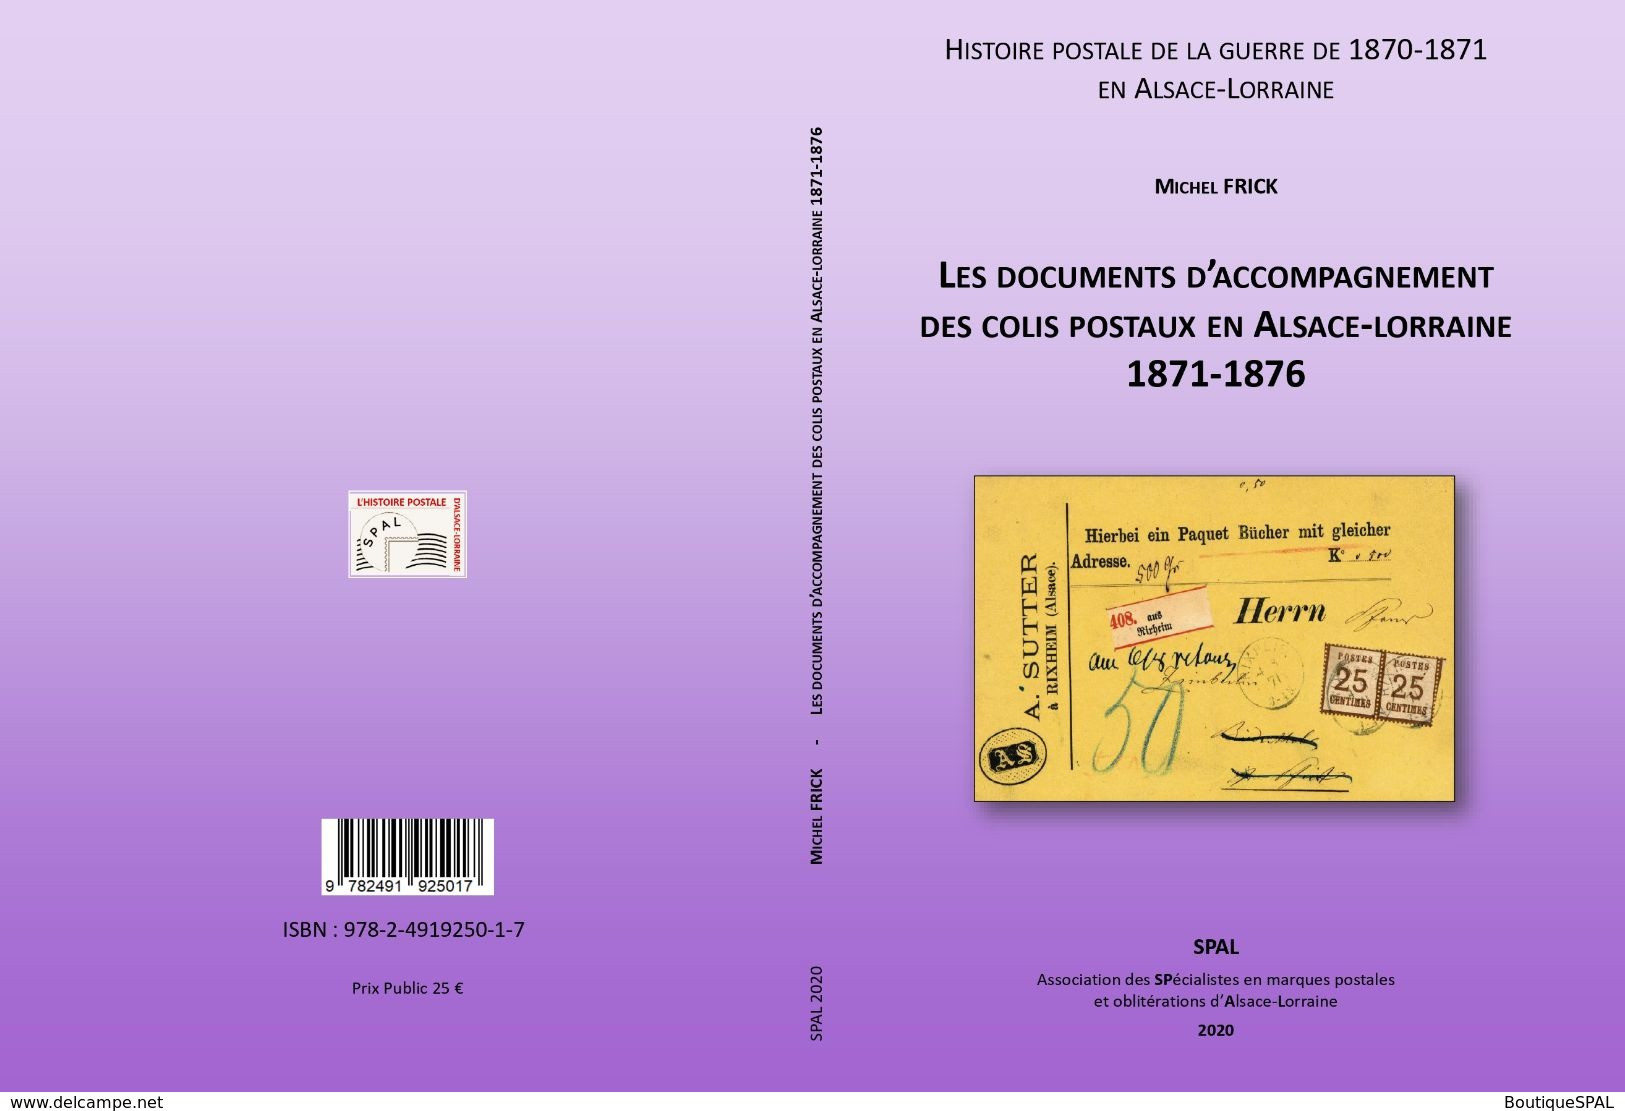 Les Documents D'accompagnement Des Colis Postaux D'Alsace-Lorraine 1871-1876 - Elsass Lothringen - SPAL 2020 - Militärpost & Postgeschichte